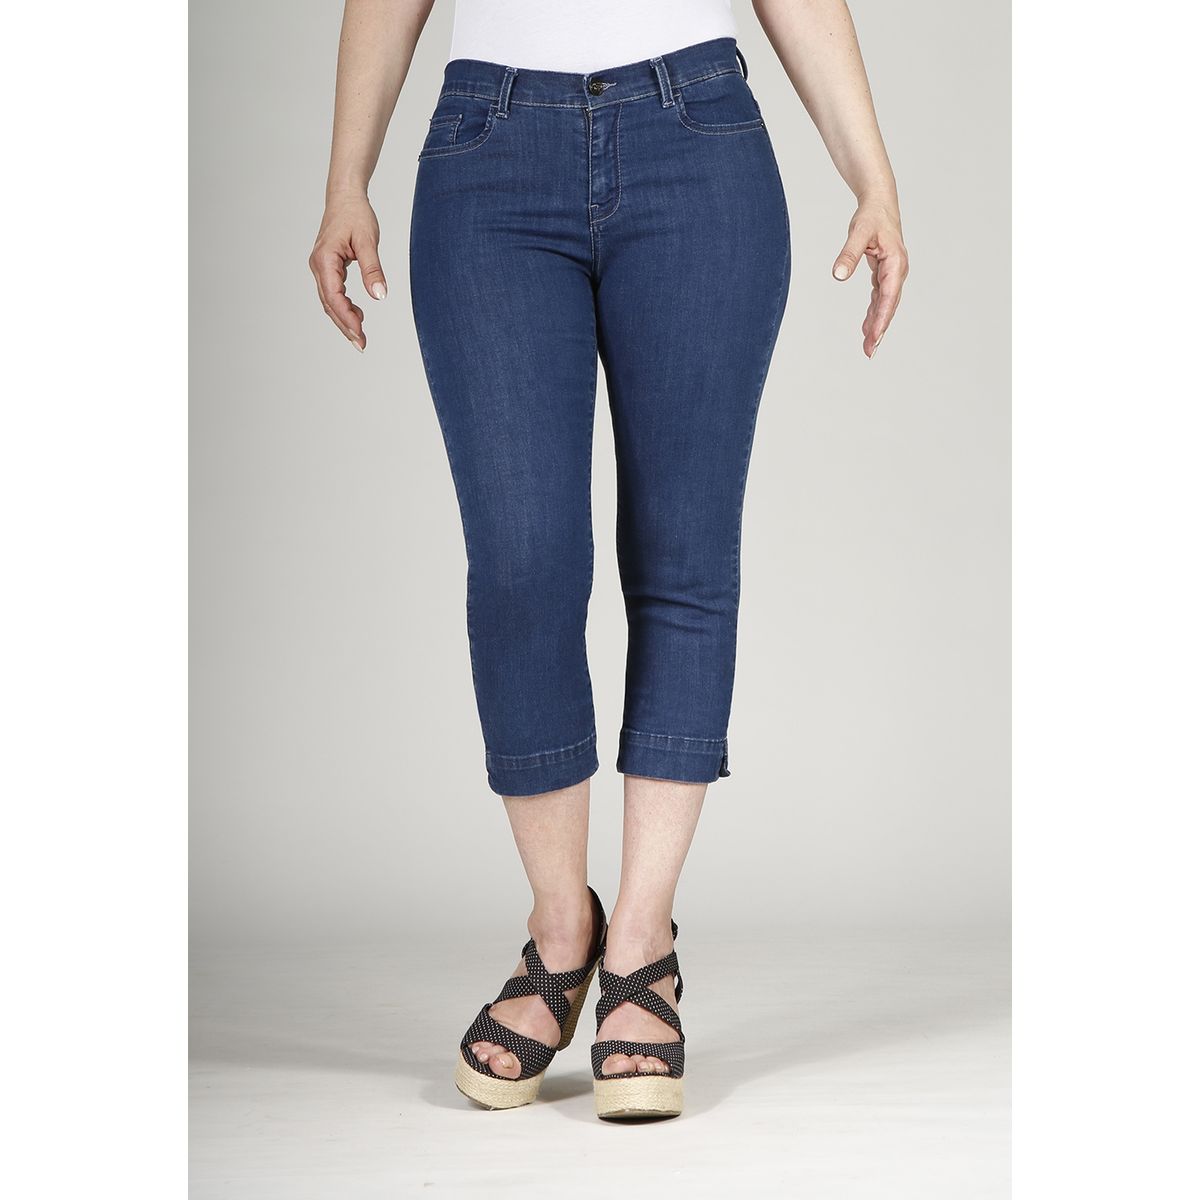 Pantacourt Femme Jeans 5 Poches Taille Haute  36 au 50 Extensible Confortable ! 